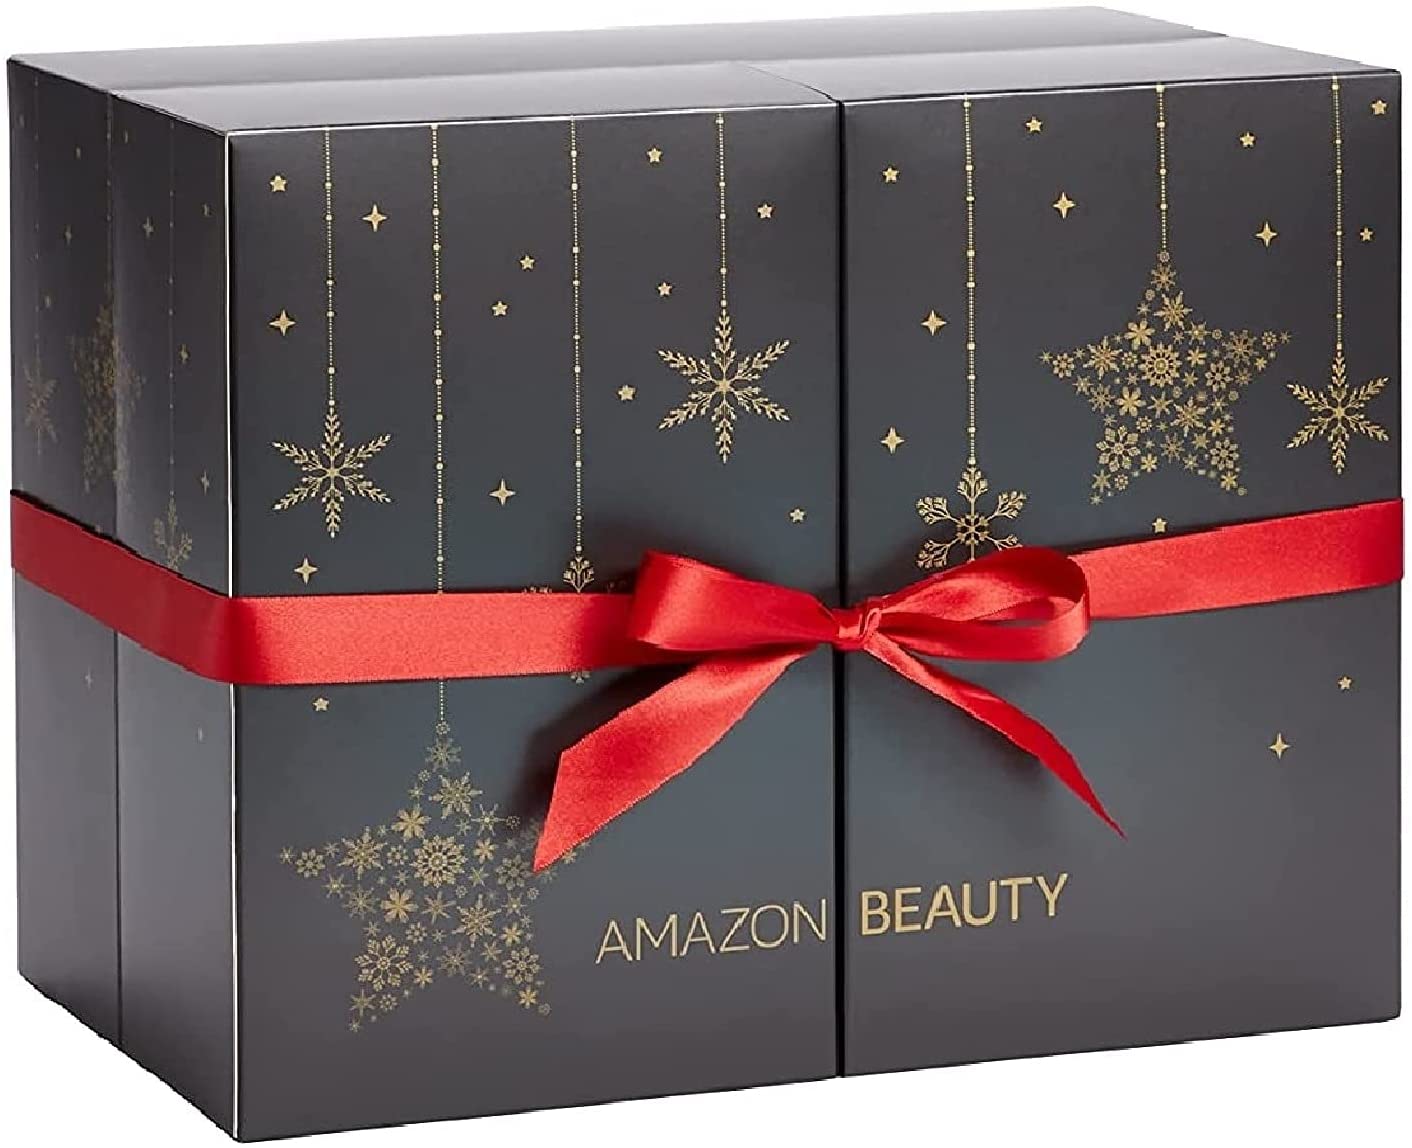 Calendario de adviento Amazon Beauty